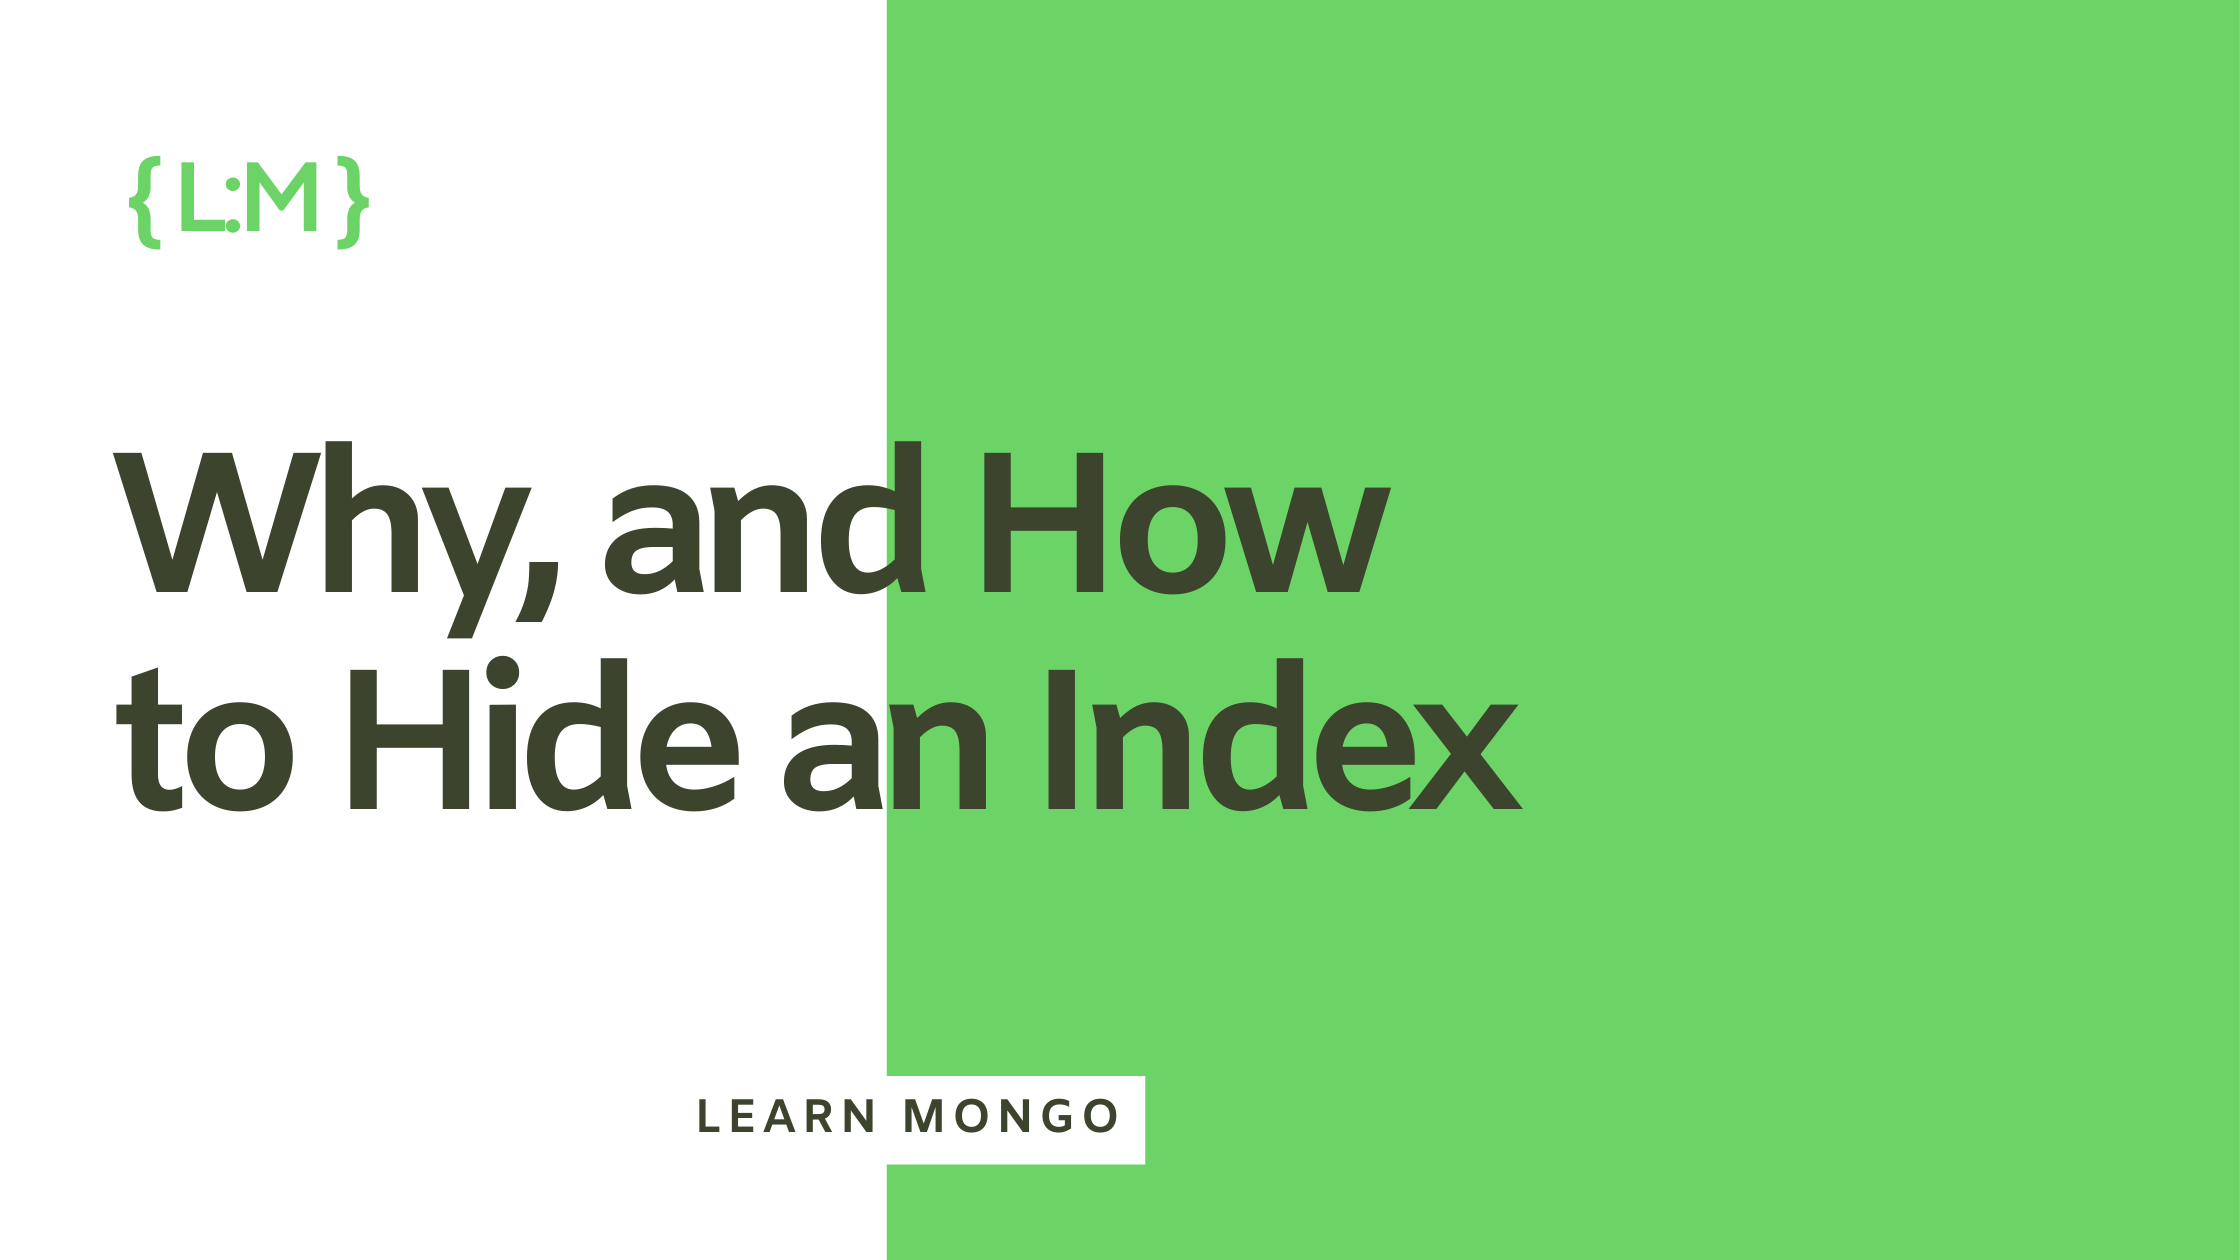 MongoDB’s “Hidden” Index Feature